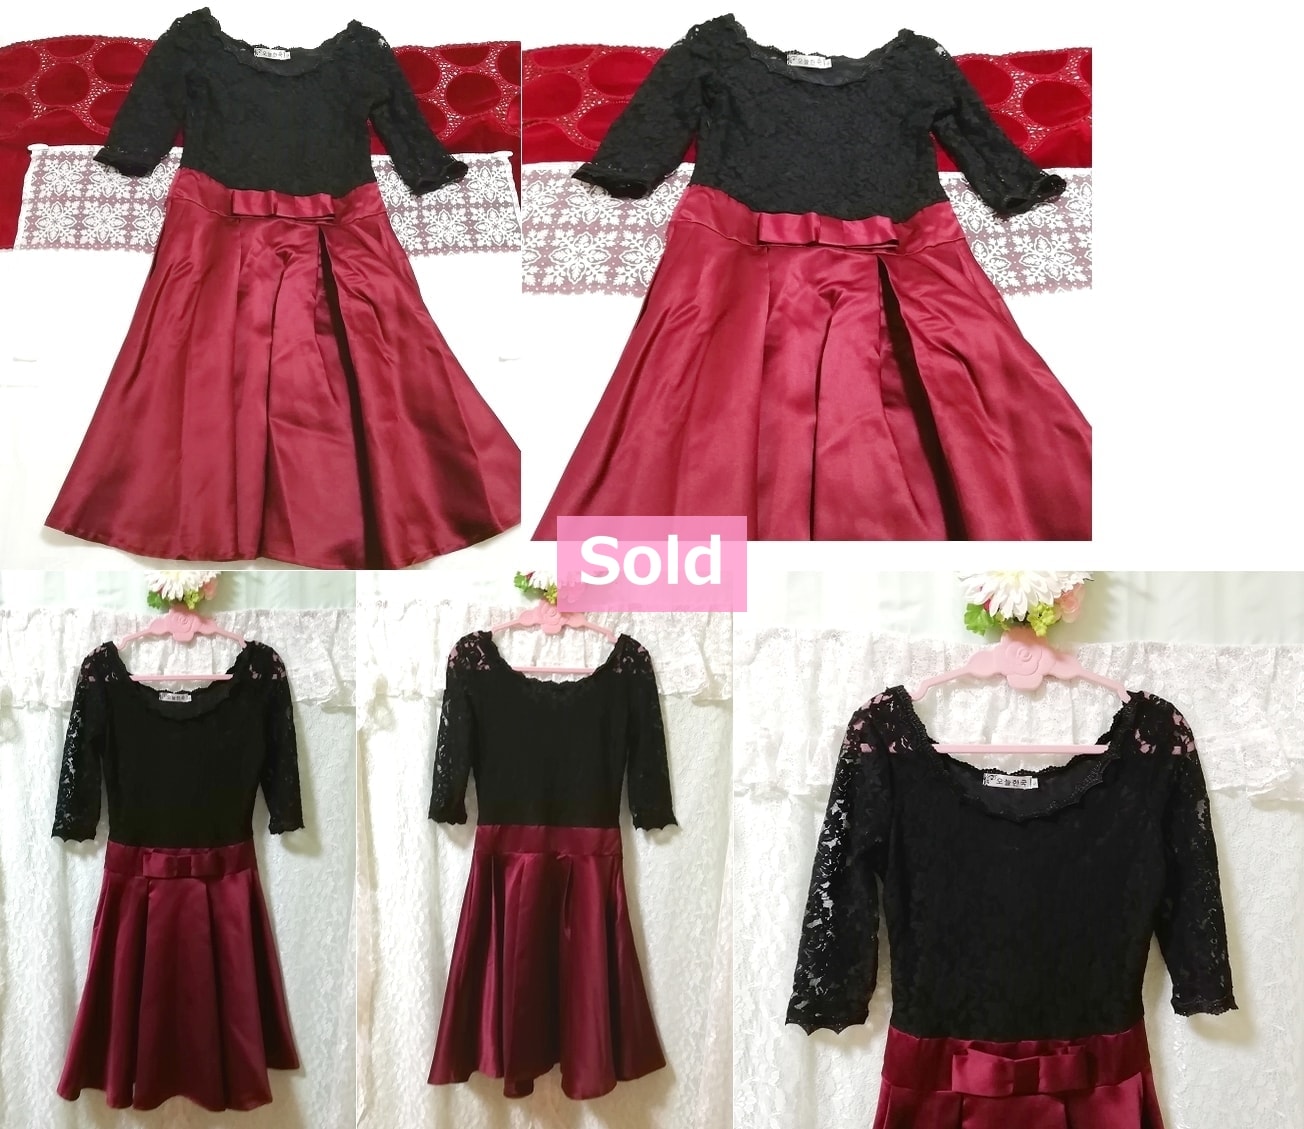 Корейское платье, сплошные черные кружевные топы, красная фиолетовая атласная юбка, платье и юбка до колен и размер M